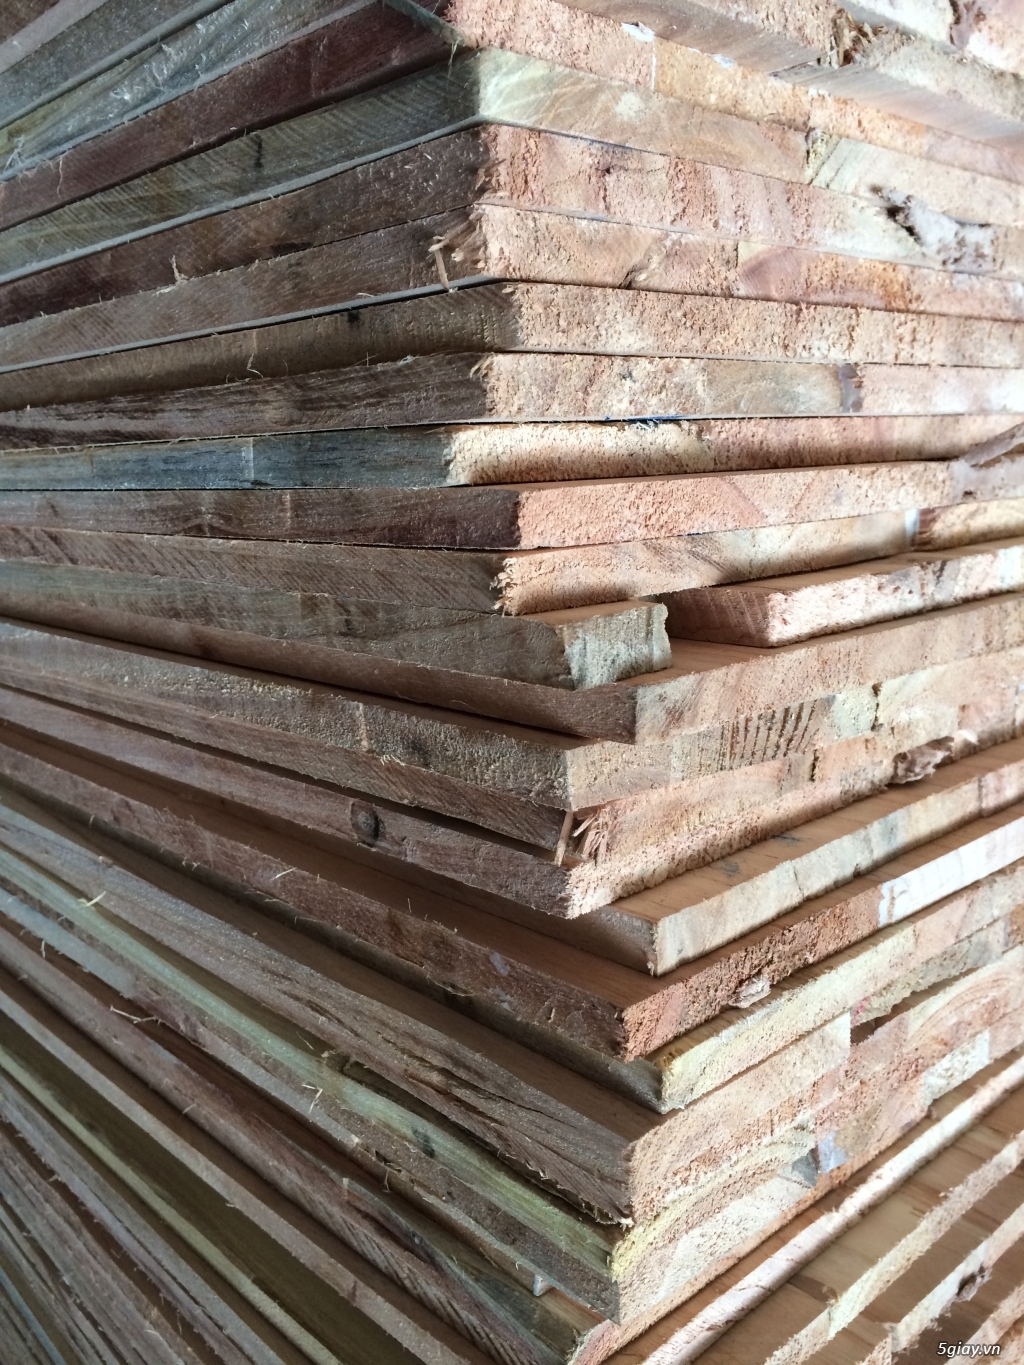 Xưởng gỗ An Hưng sản xuất ván gỗ ghép suốt xoan đào, thông, gỗ nhóm... - 3